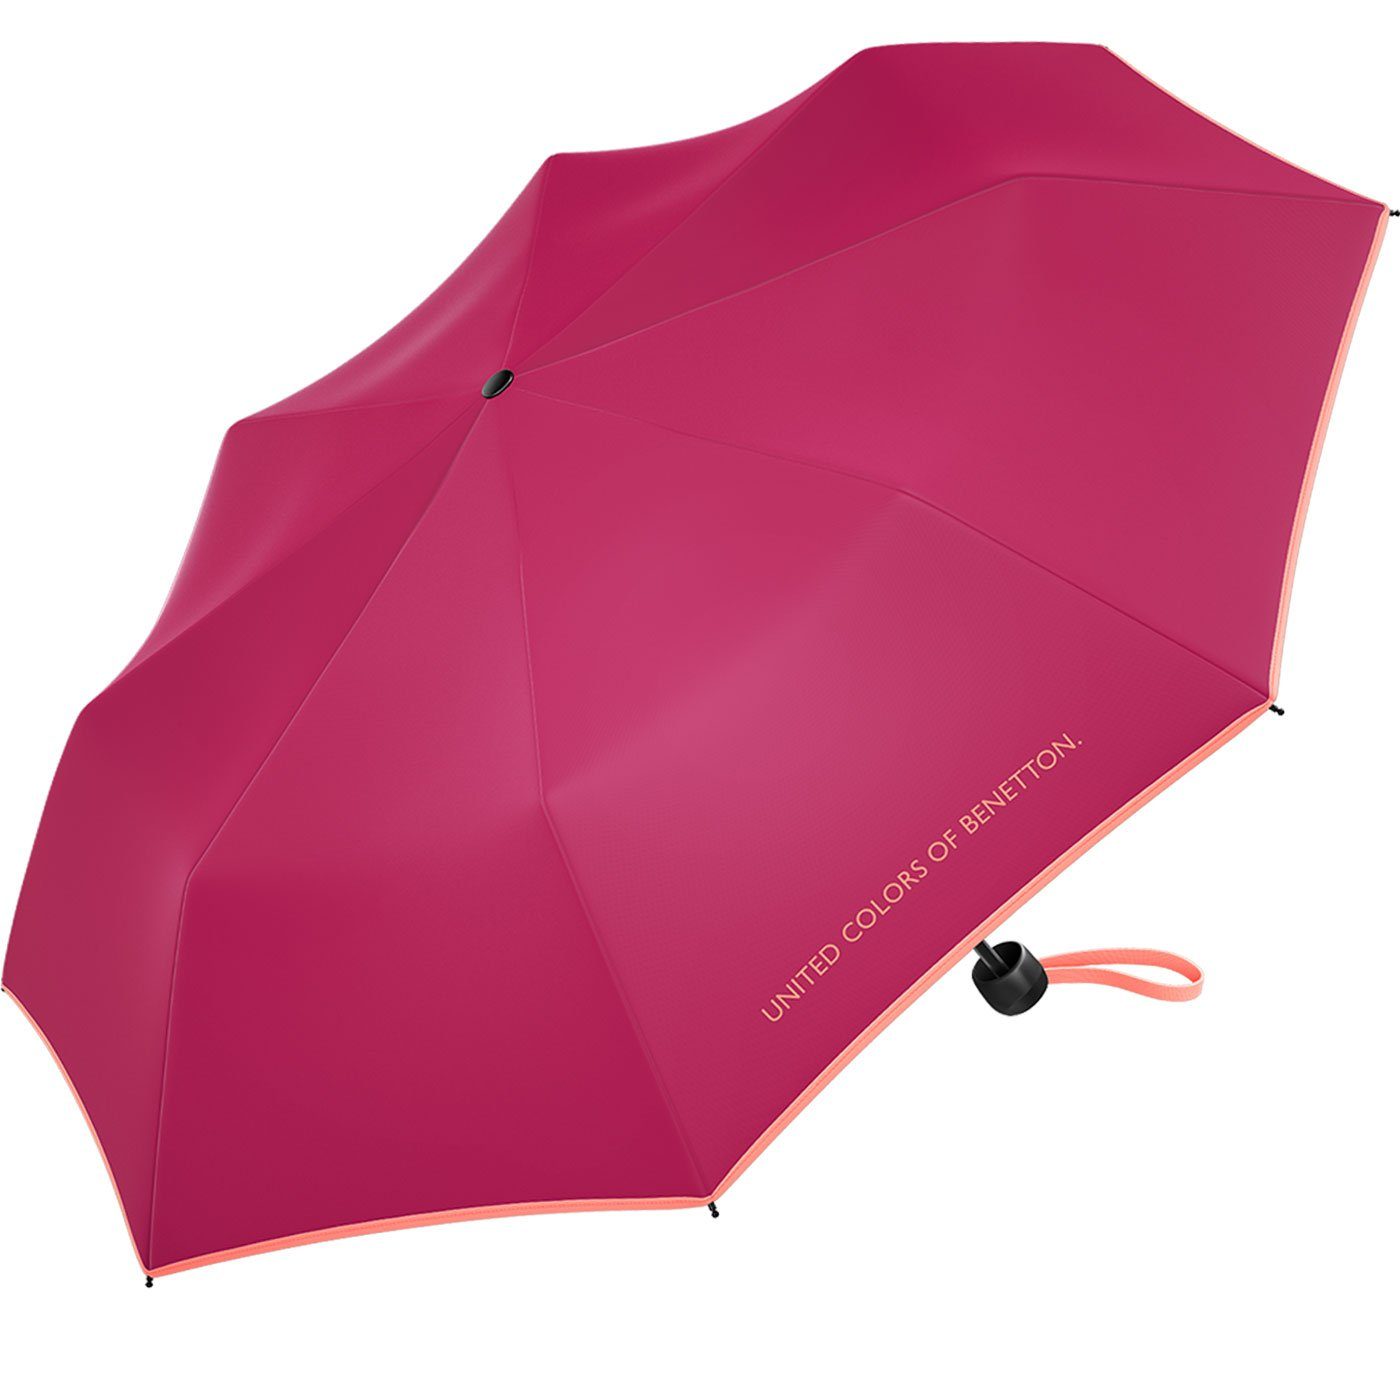 Mini Modefarben bright - Taschenregenschirm Benetton rose, United berry-lachs mit kontrastreichem of 2022 Colors leuchtende HW Super Saum